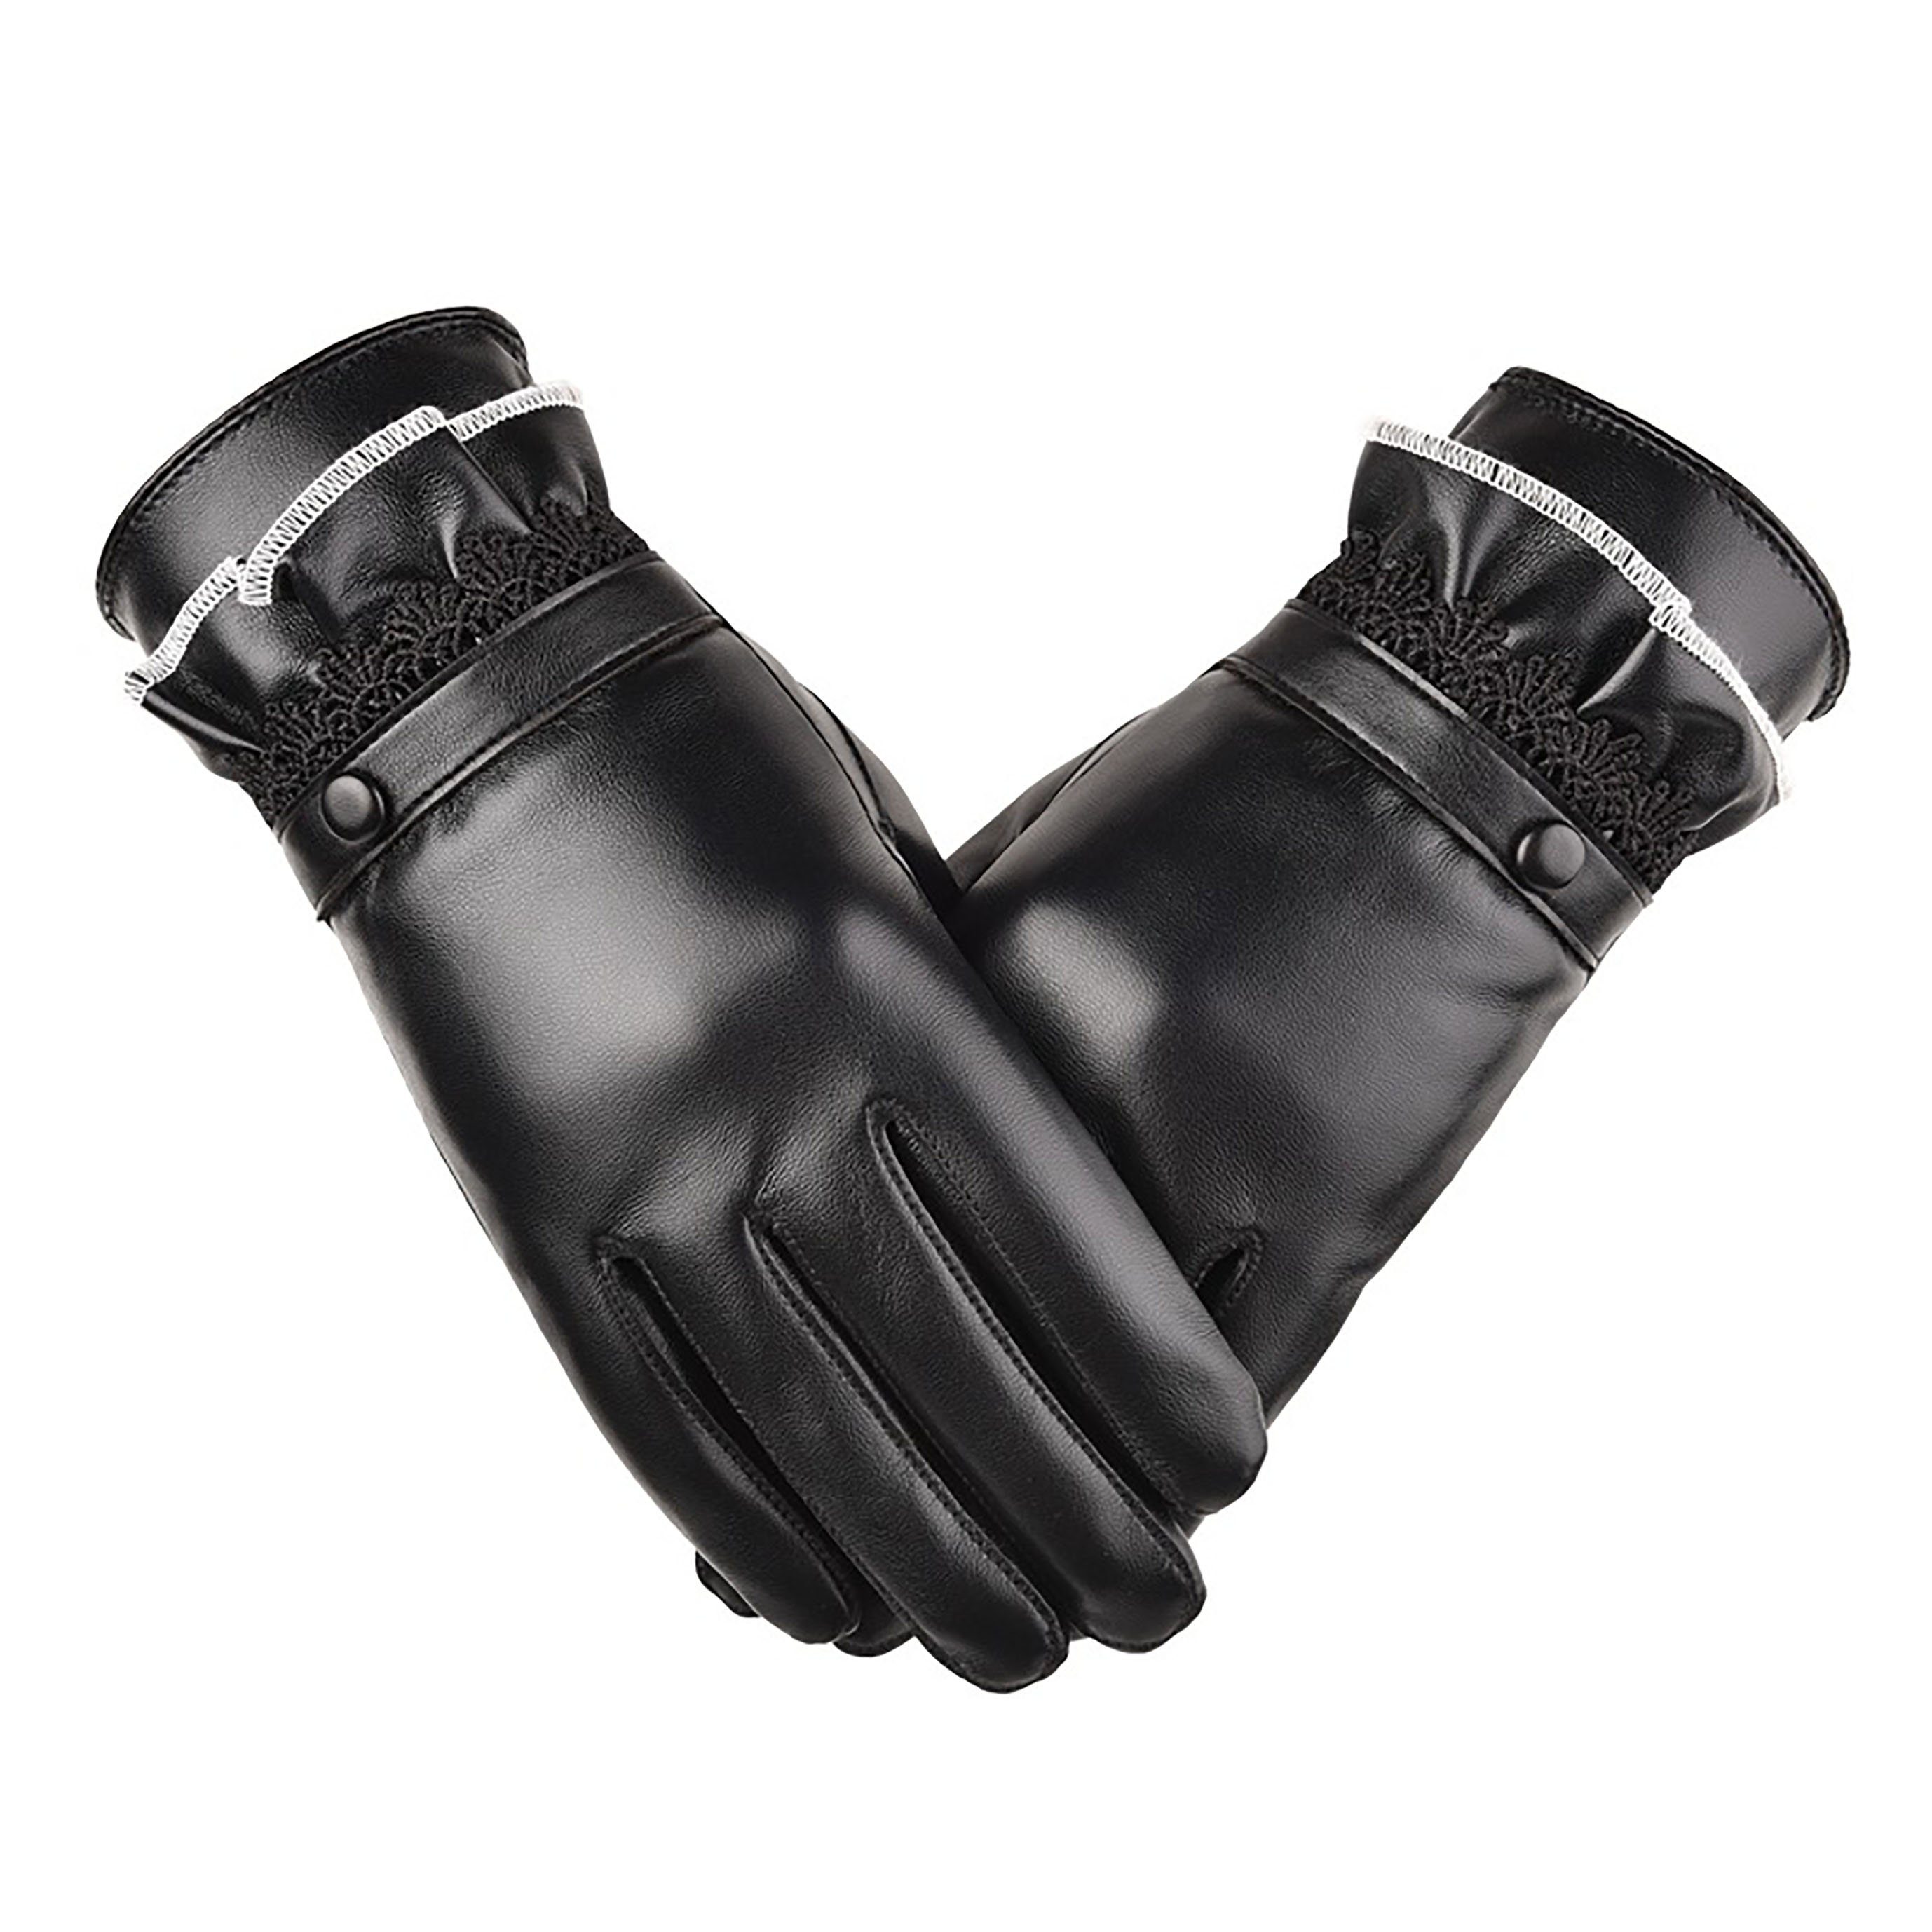 SRRINM Trikot-Handschuhe Warme gepolsterte Lederhandschuhe | Sporthandschuhe